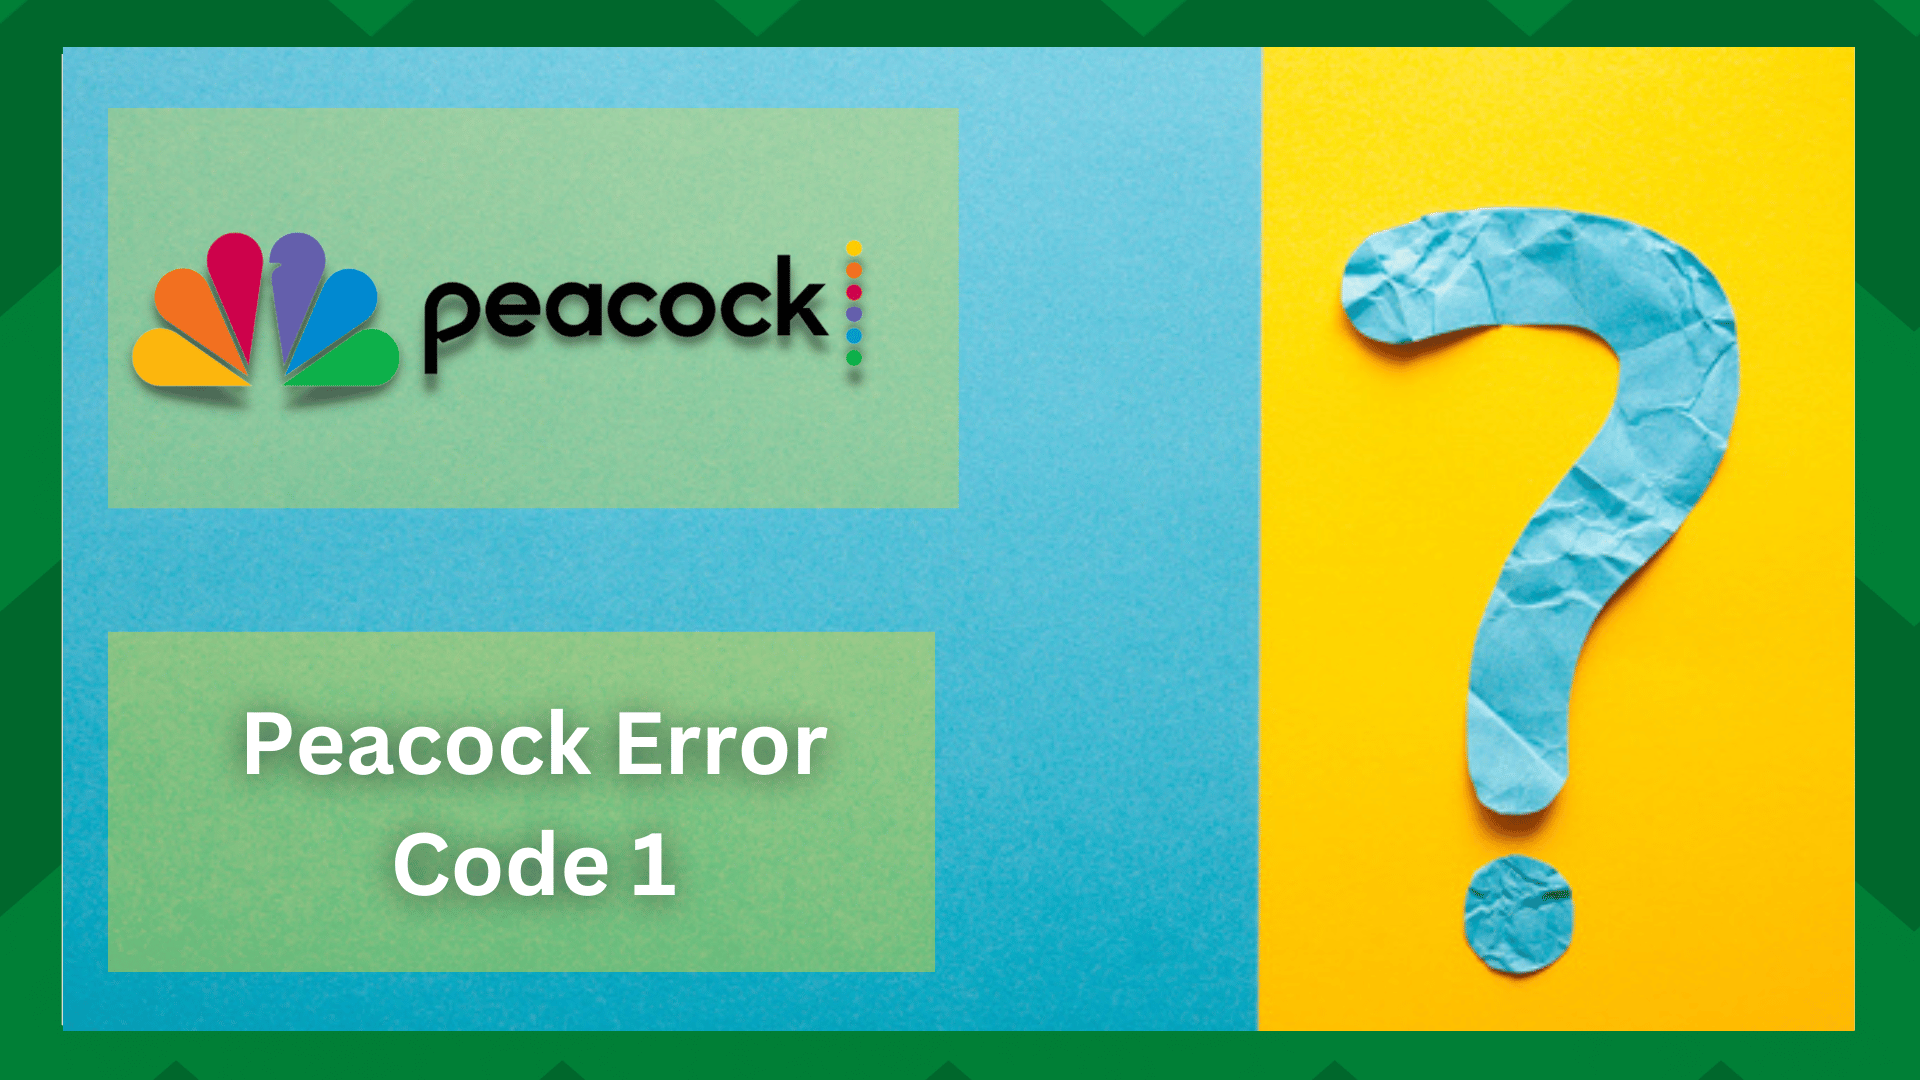 5 populiarūs sprendimai dėl "Peacock" klaidos kodo 1